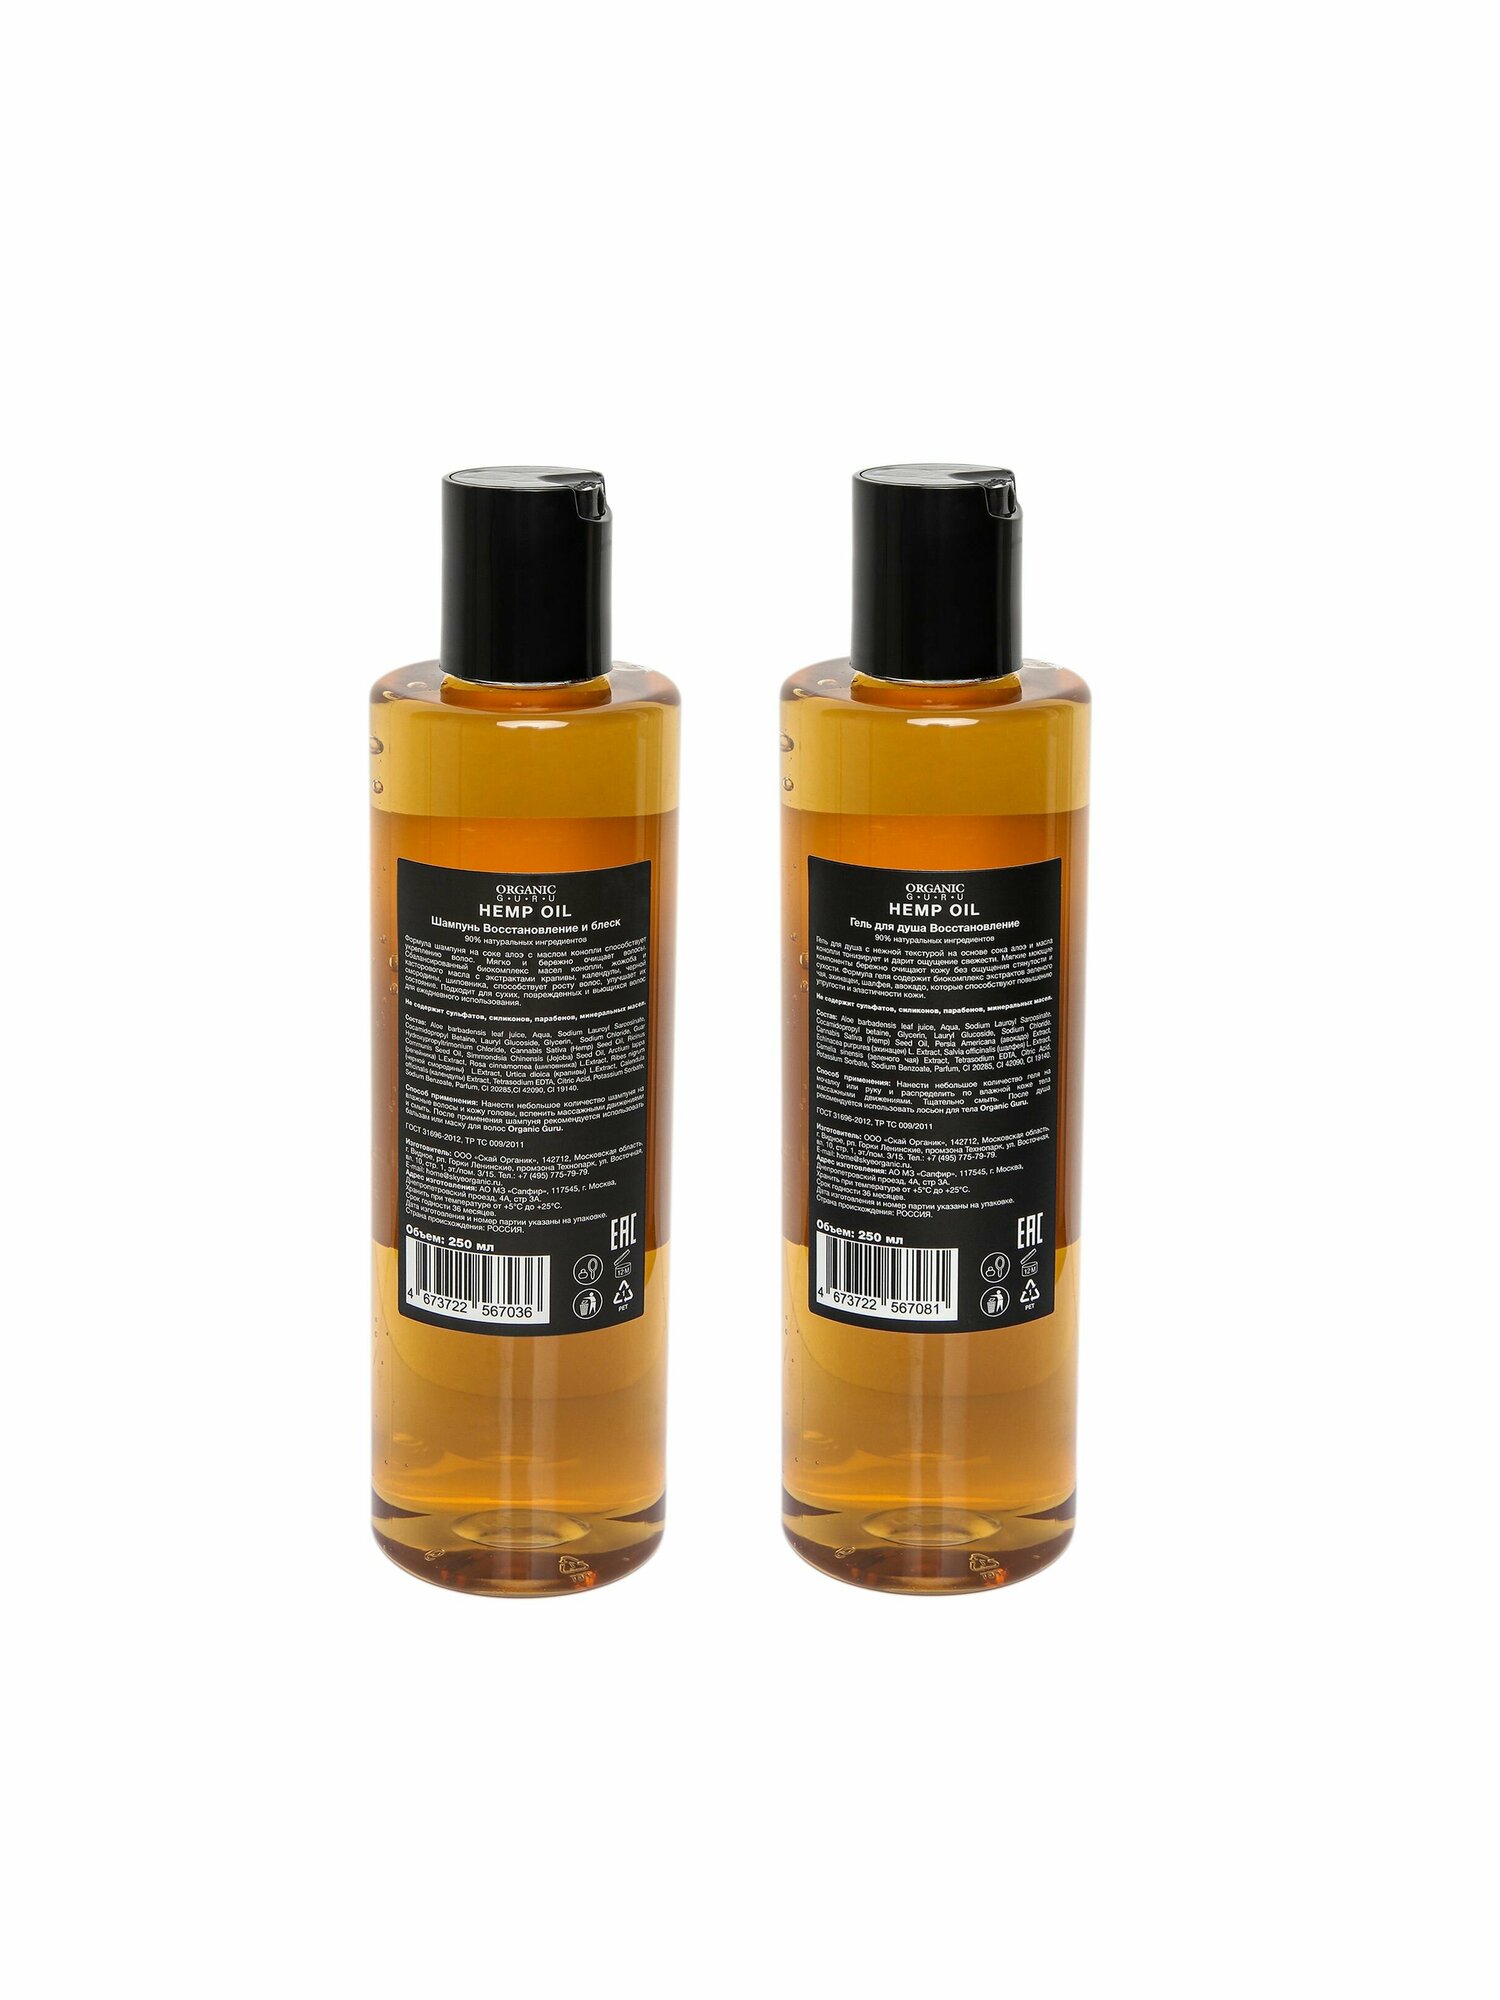 ORGANIC GURU Шампунь для волос "Конопляное масло" 250 ml. + Гель для душа "HEMP OIL" 250 ml. Без SLS и парабенов, бессульфатный, органический.